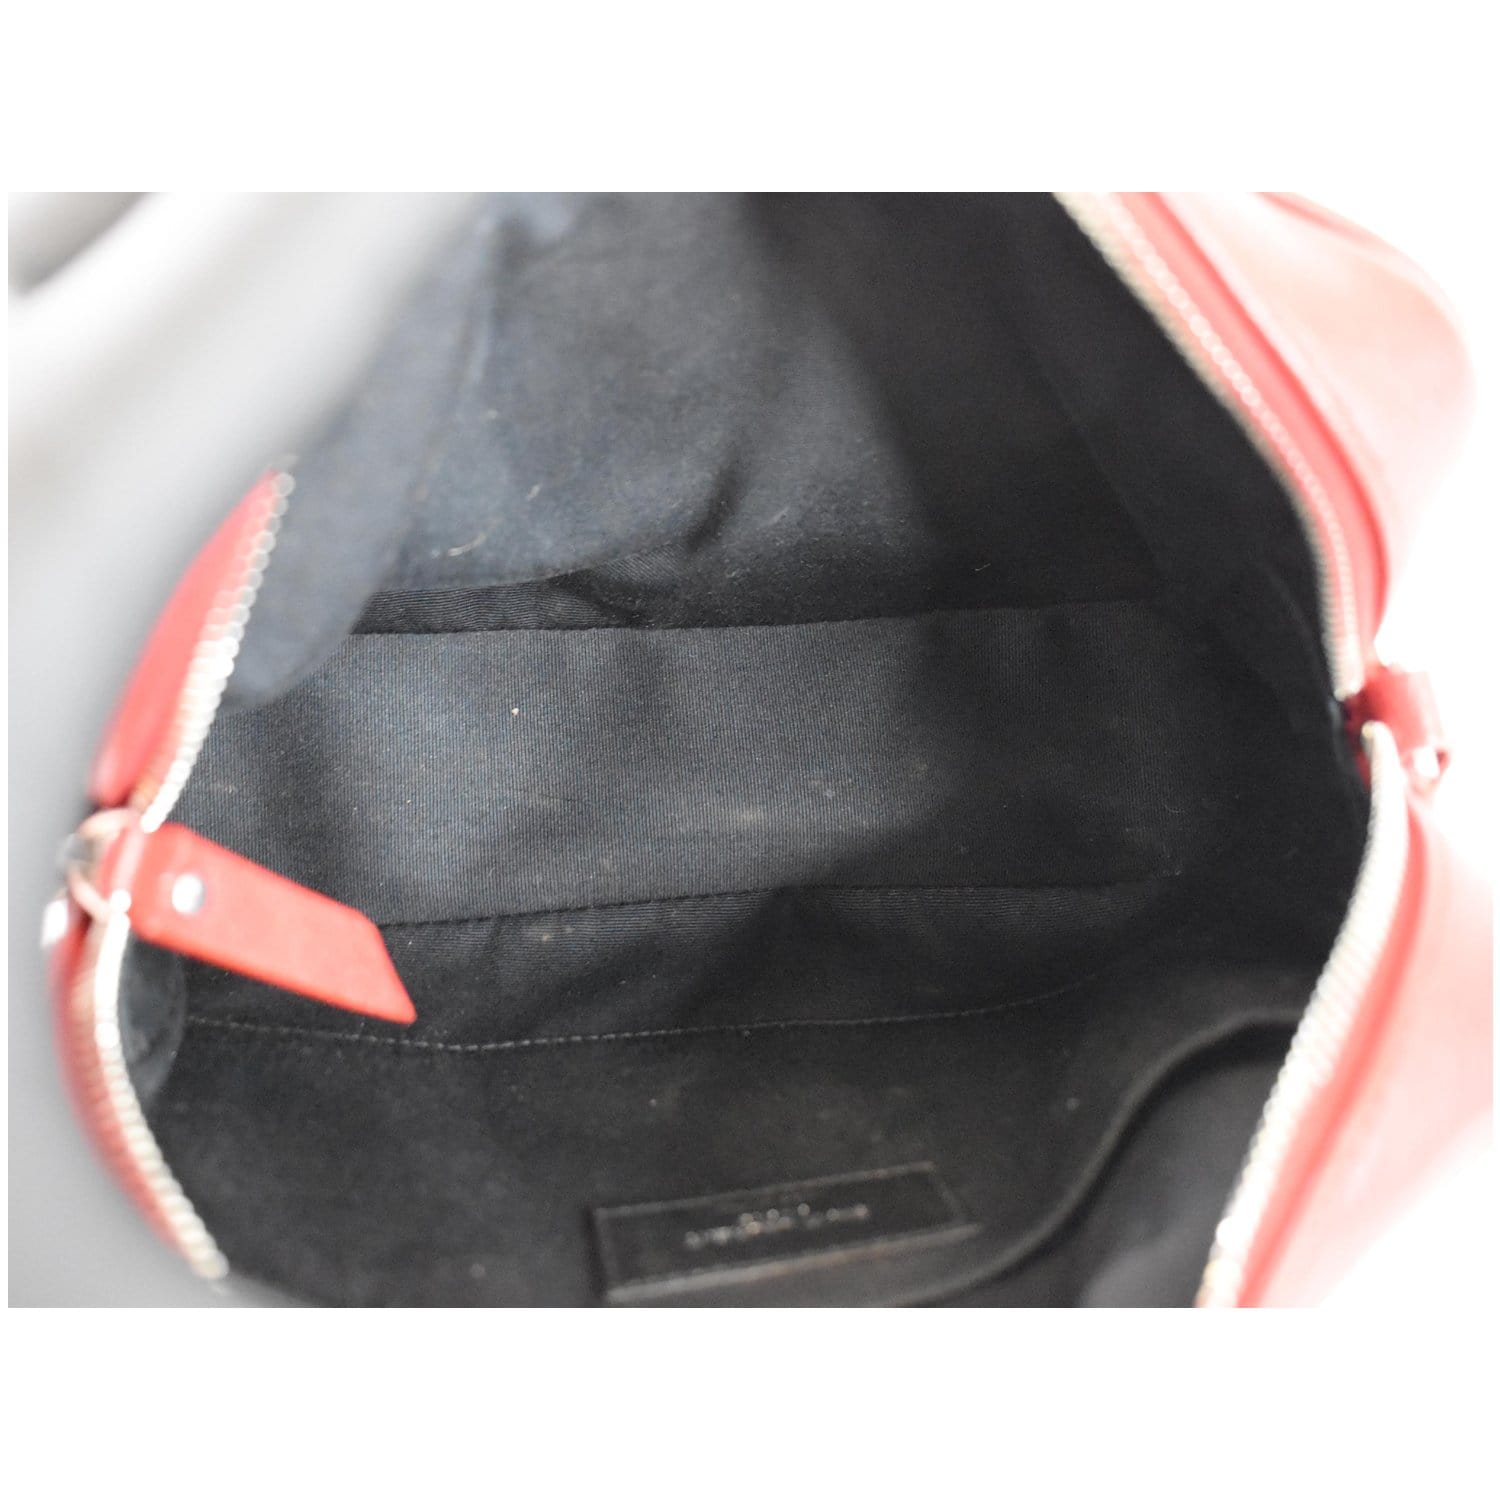 YVES SAINT LAURENT Lou Camera Monogram Leather Shoulder Bag Red - 15%